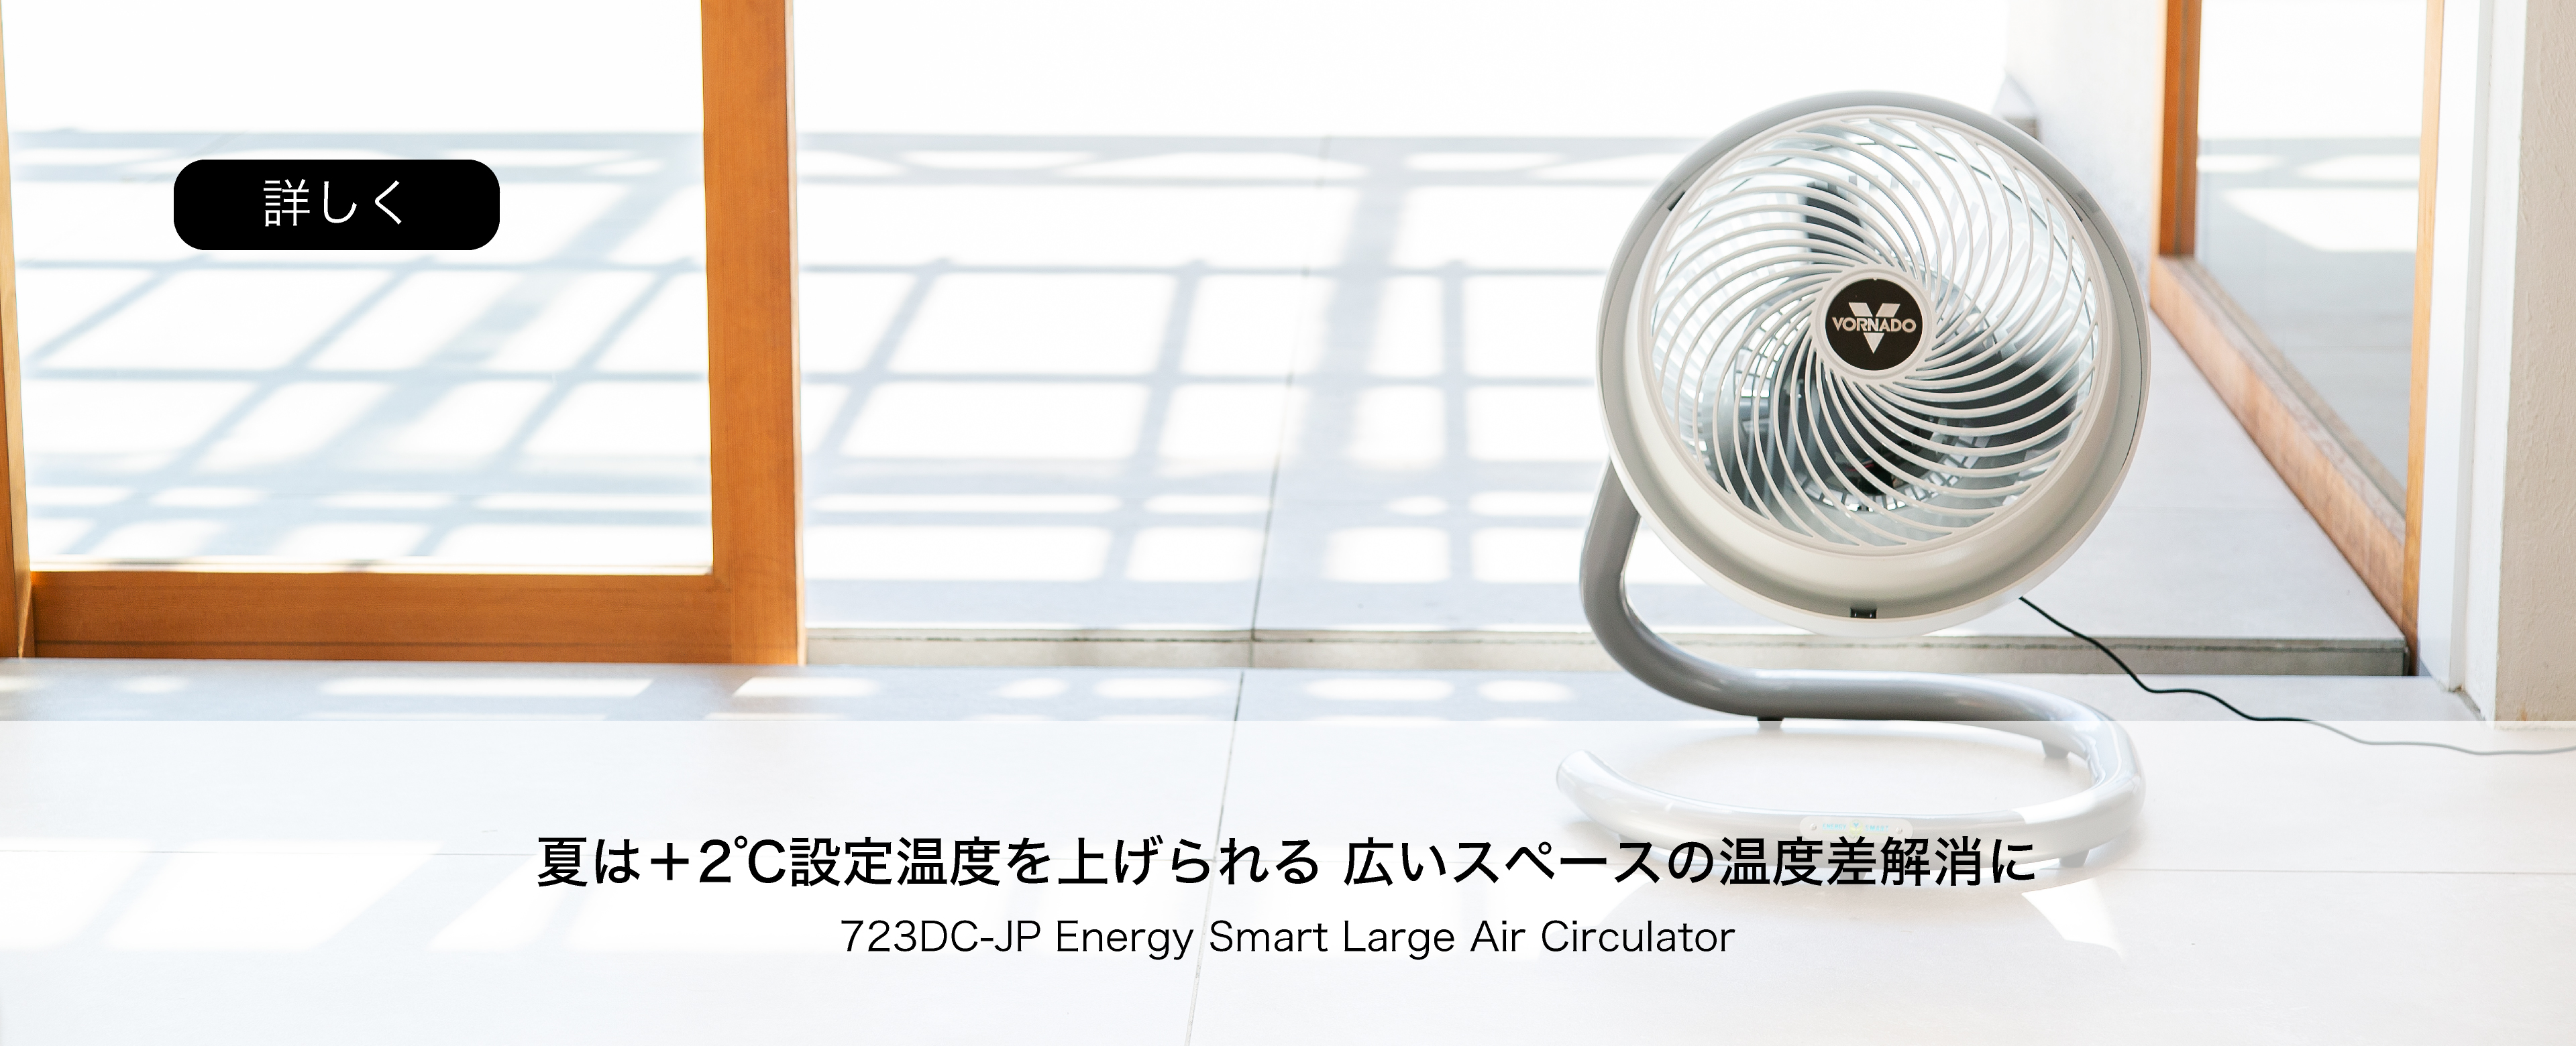 冬は-2°C設定温度を下げられる広いスペースの温度差解消に 723DC-JP Energy Smart Large Air Circulator 詳しく